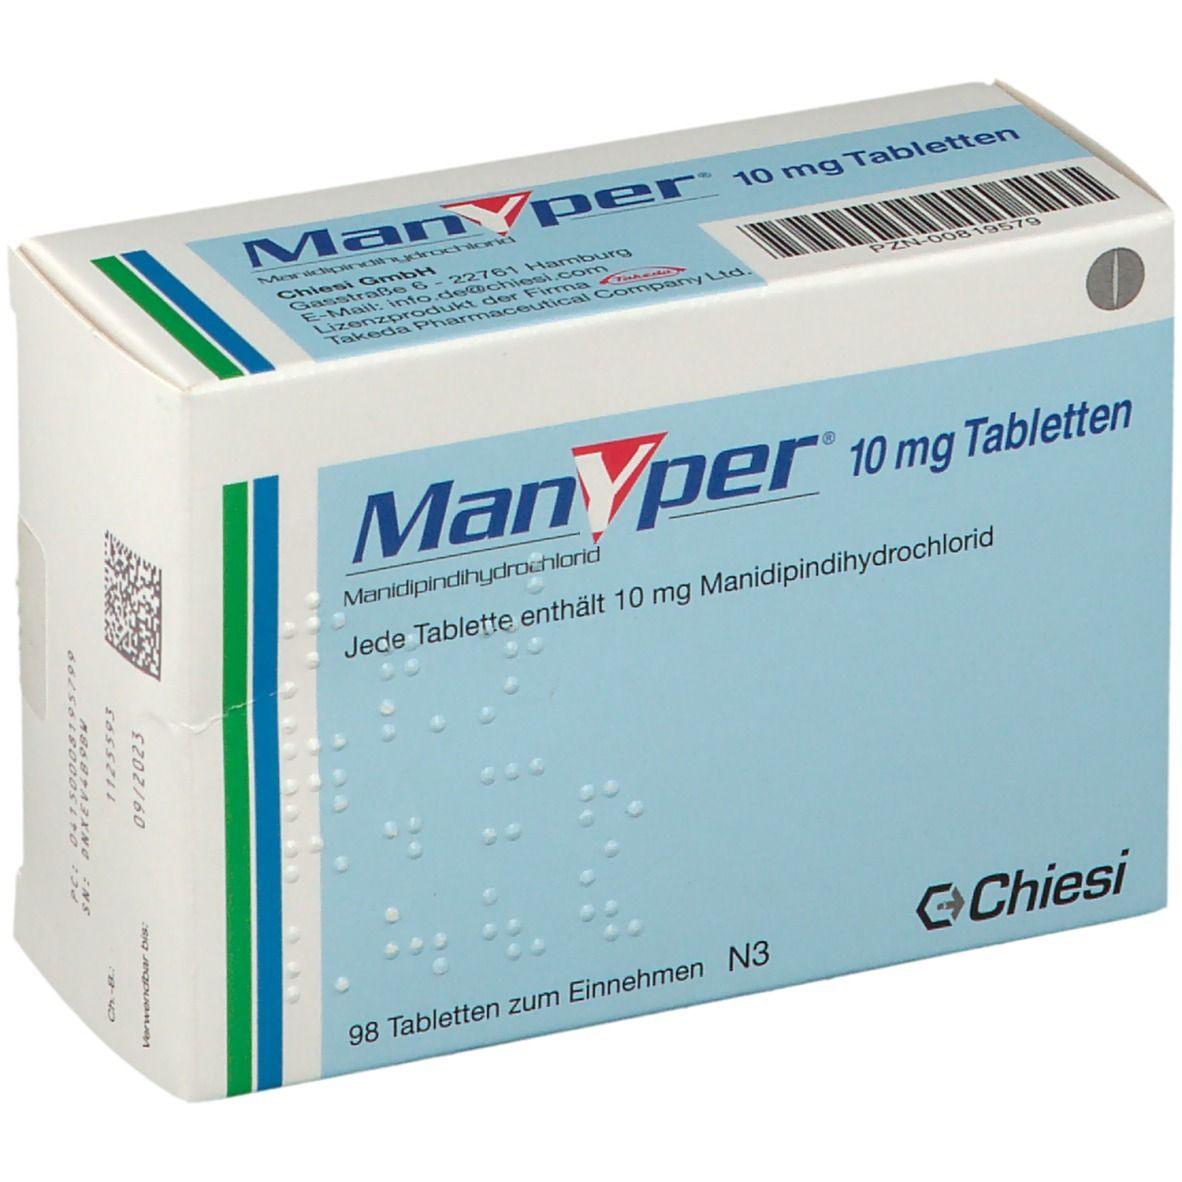 Manyper® 10 mg